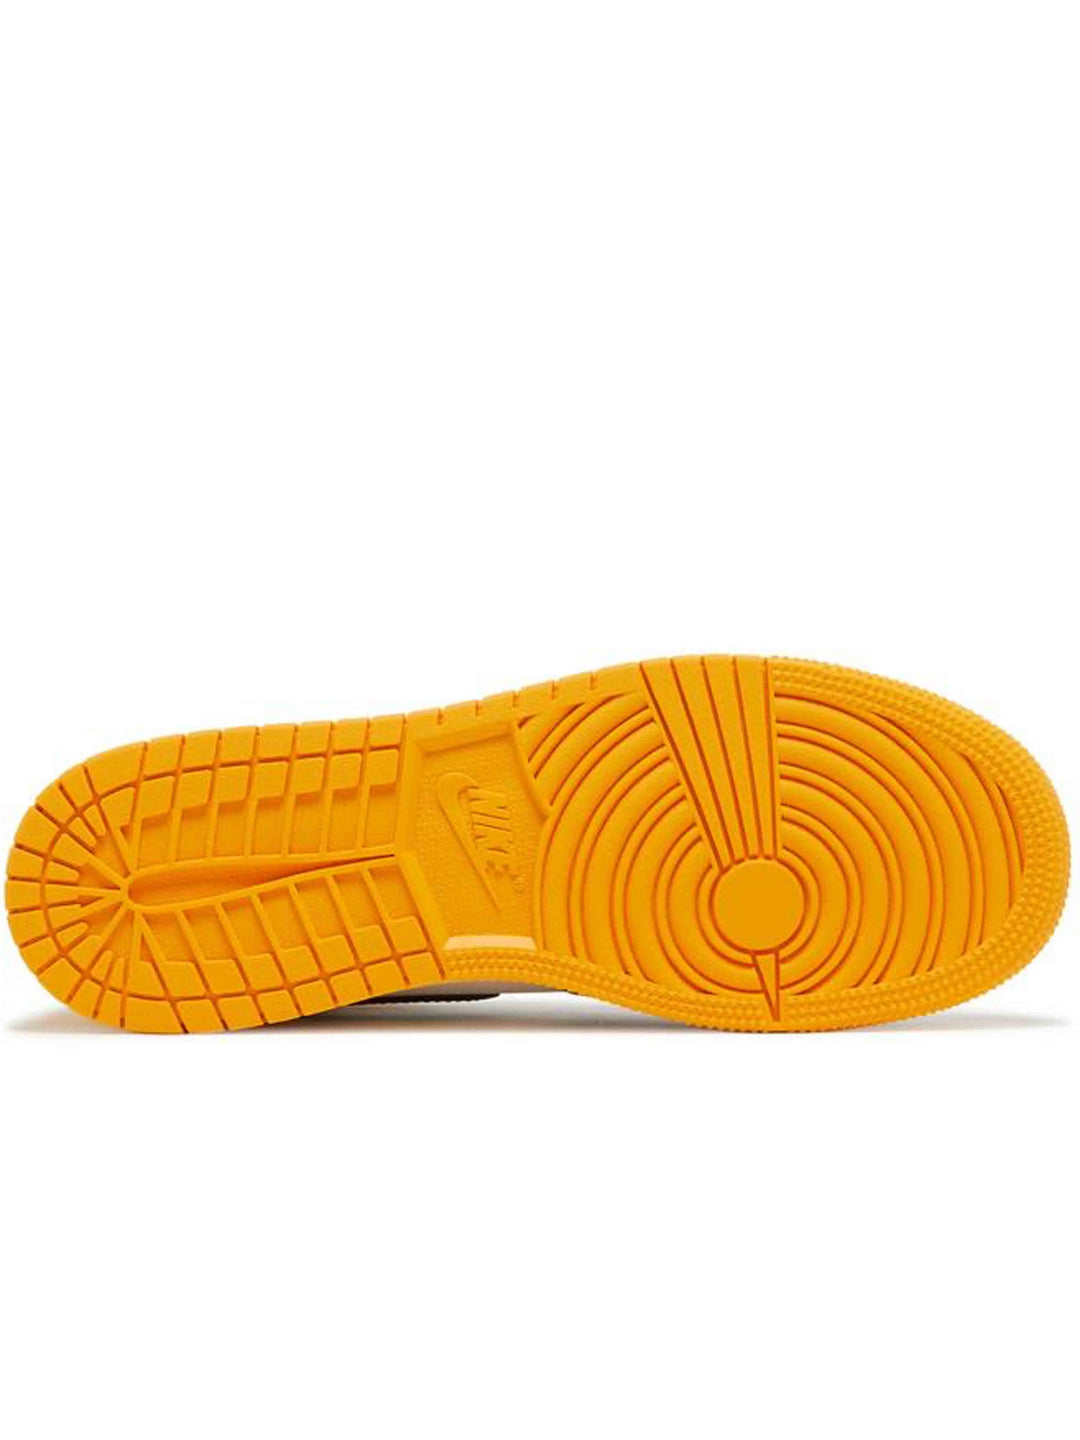 Nike Air Jordan 1 Retro High OG Yellow Toe (GS) Prior